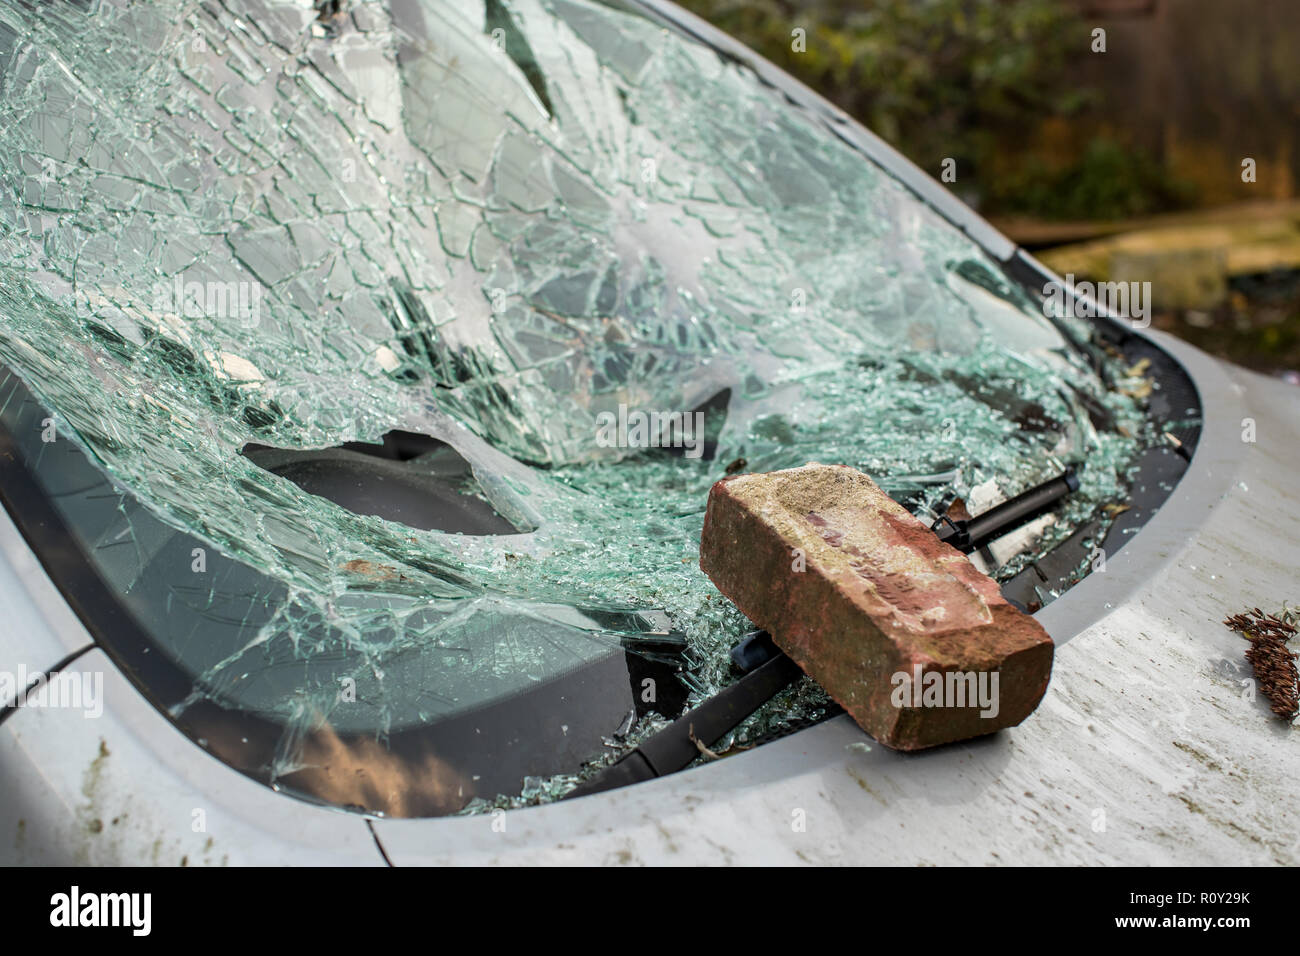 Auto mit gebrochener Windschutzscheibe - ein lizenzfreies Stock Foto von  Photocase